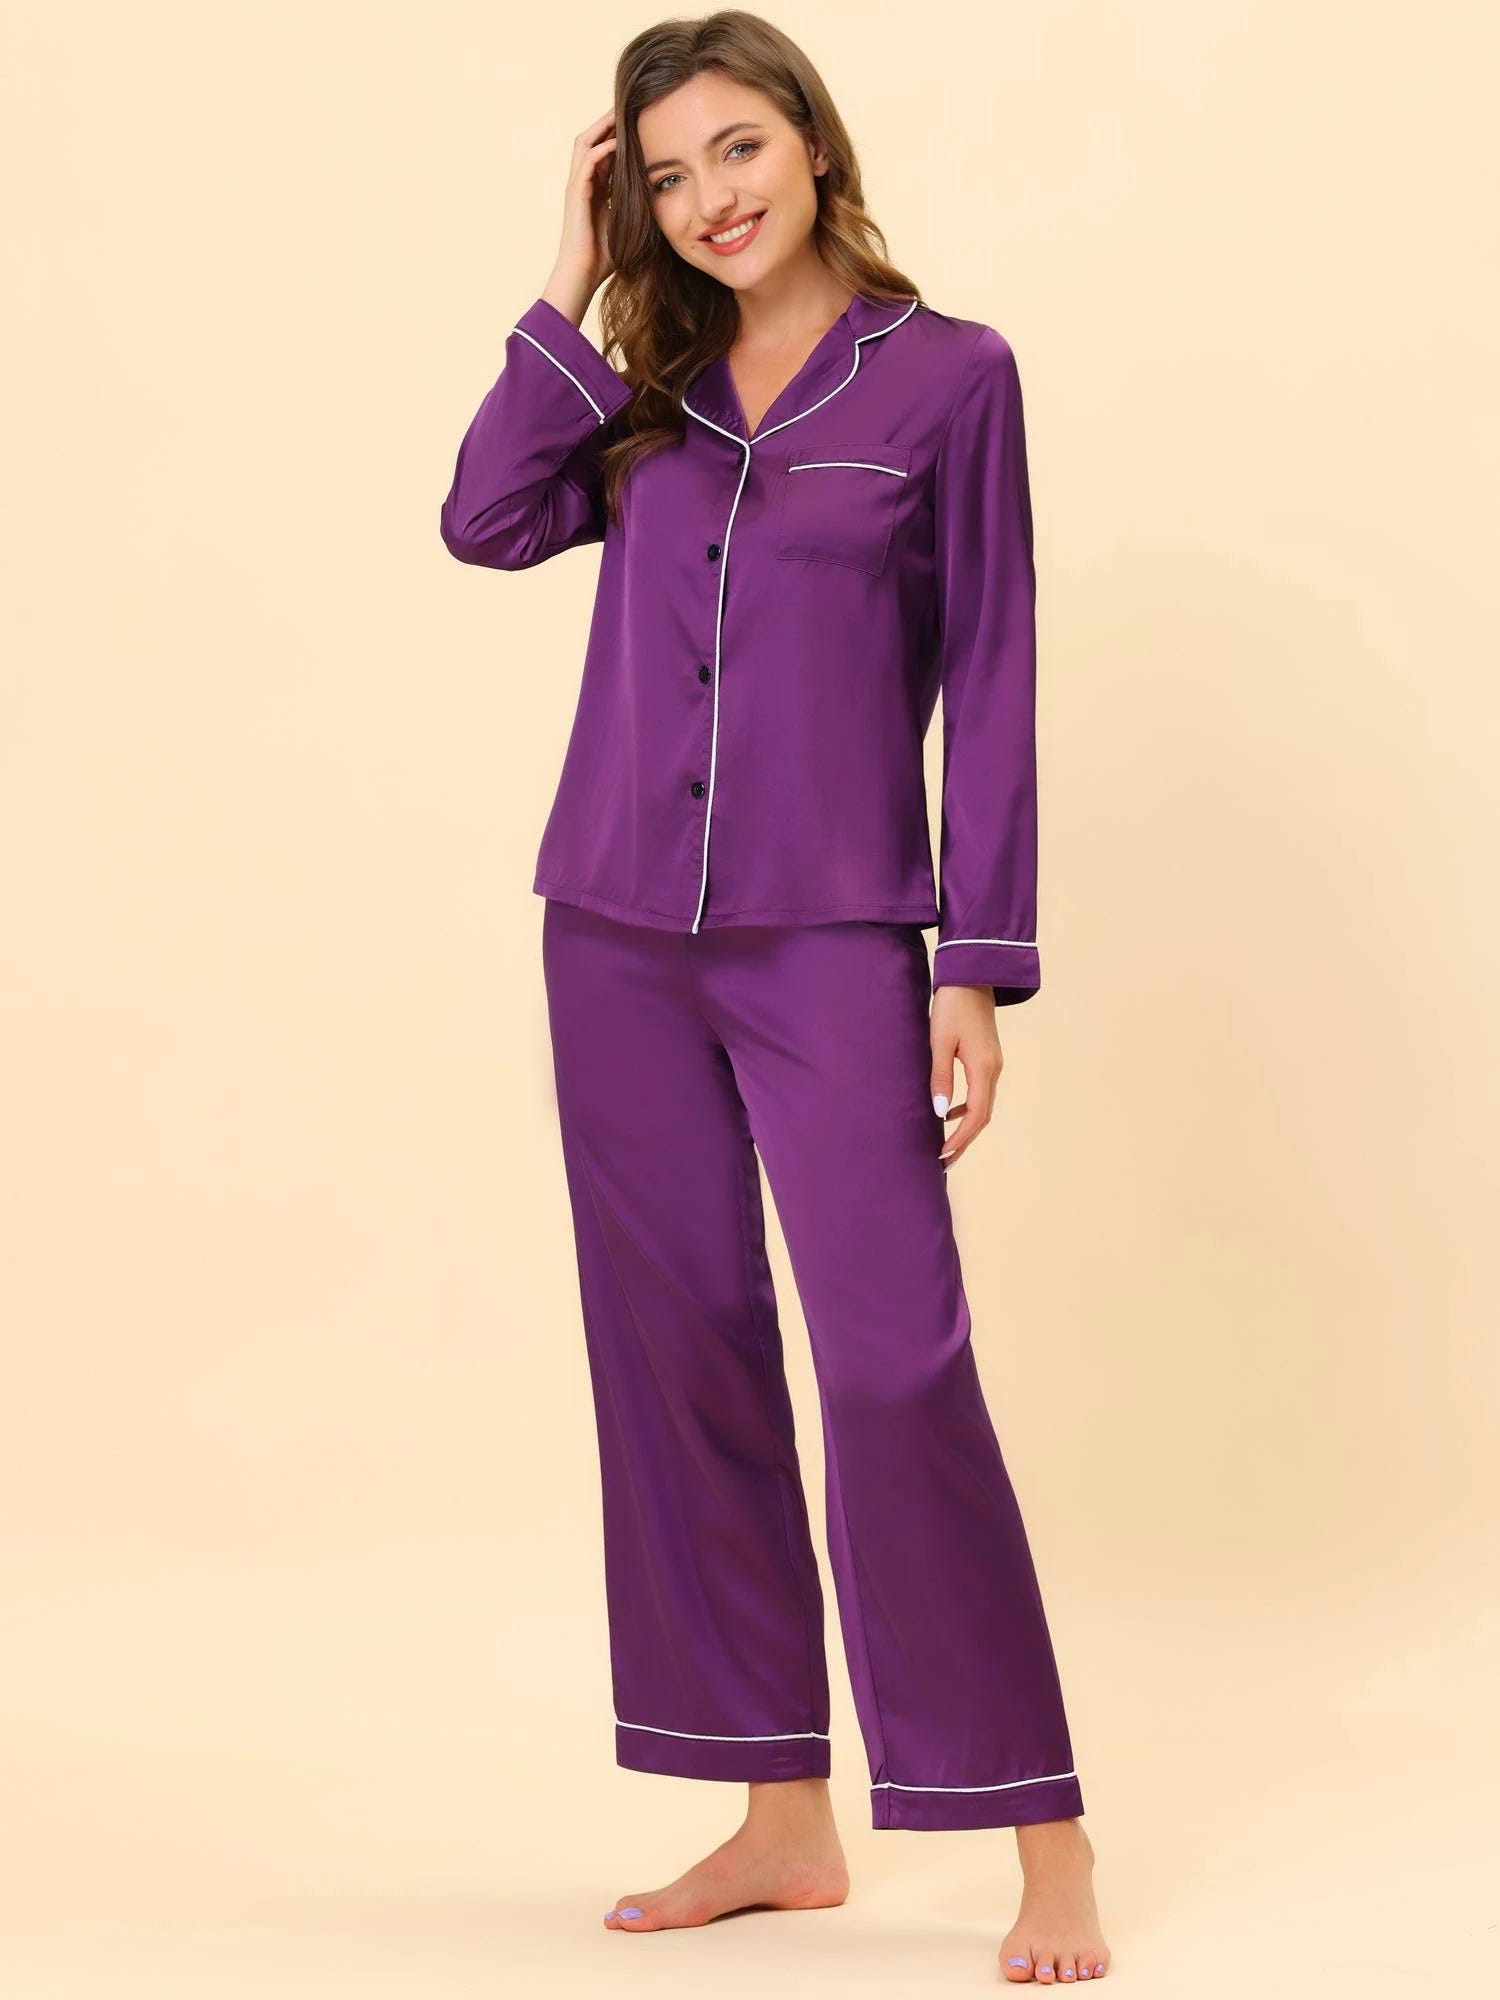 Lavender Satin Lounge Pajamas - Comfortable Sleepwear for Women | Image